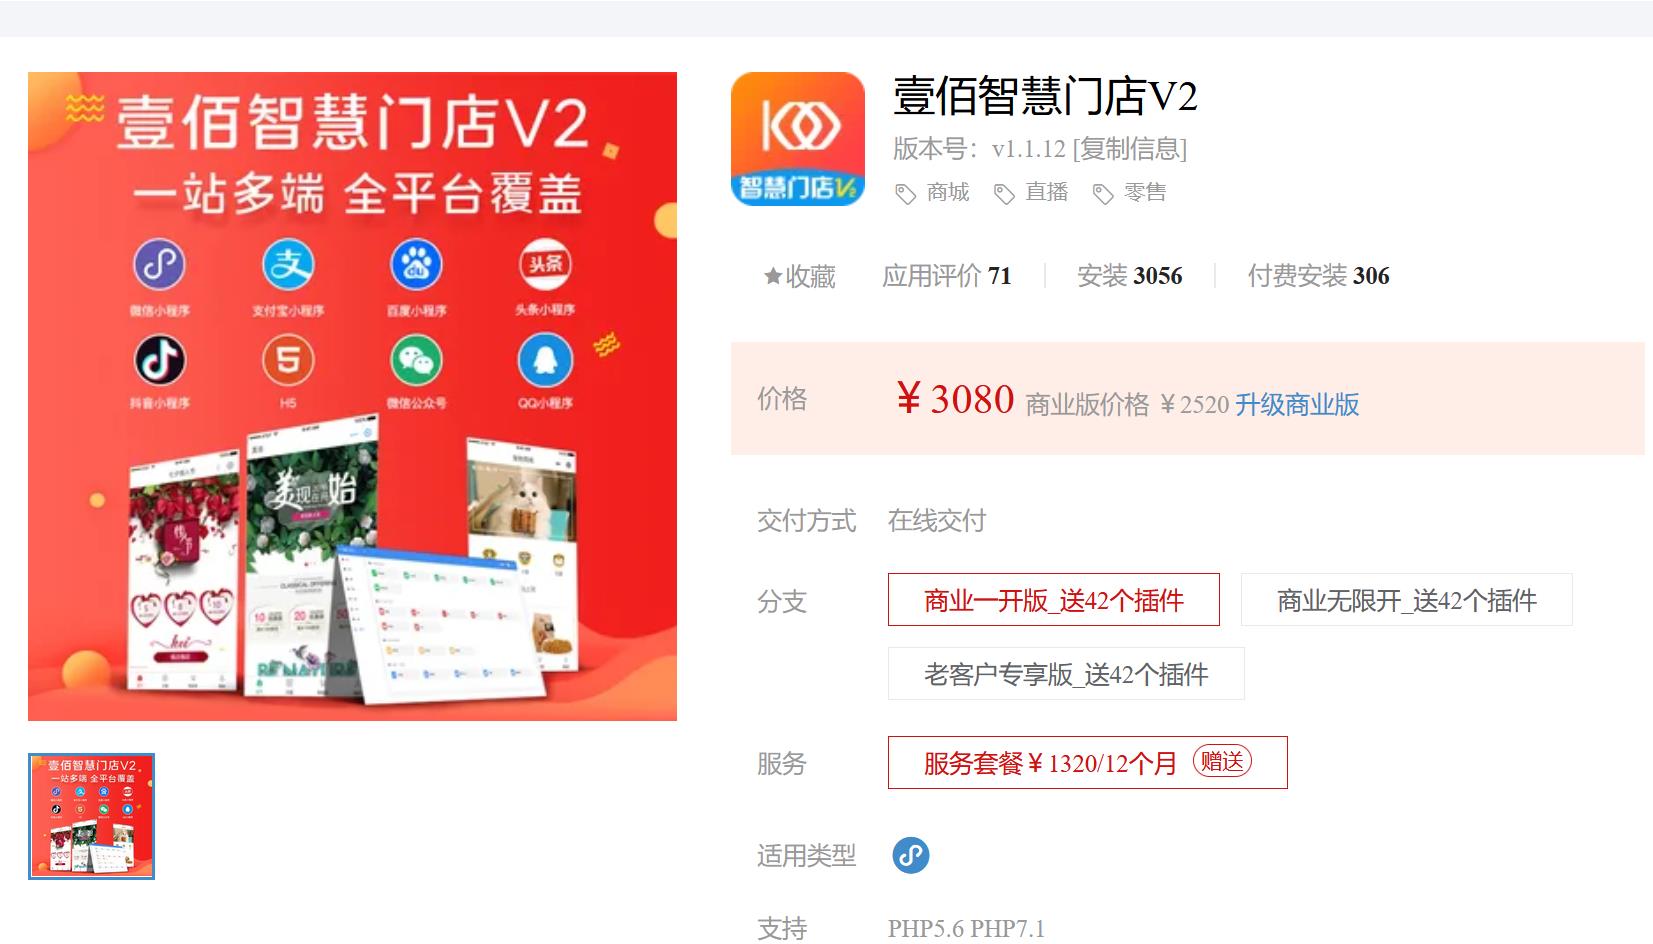 壹佰智慧门店V2-1.1.8 新增：商品列表新增Excel导入功能